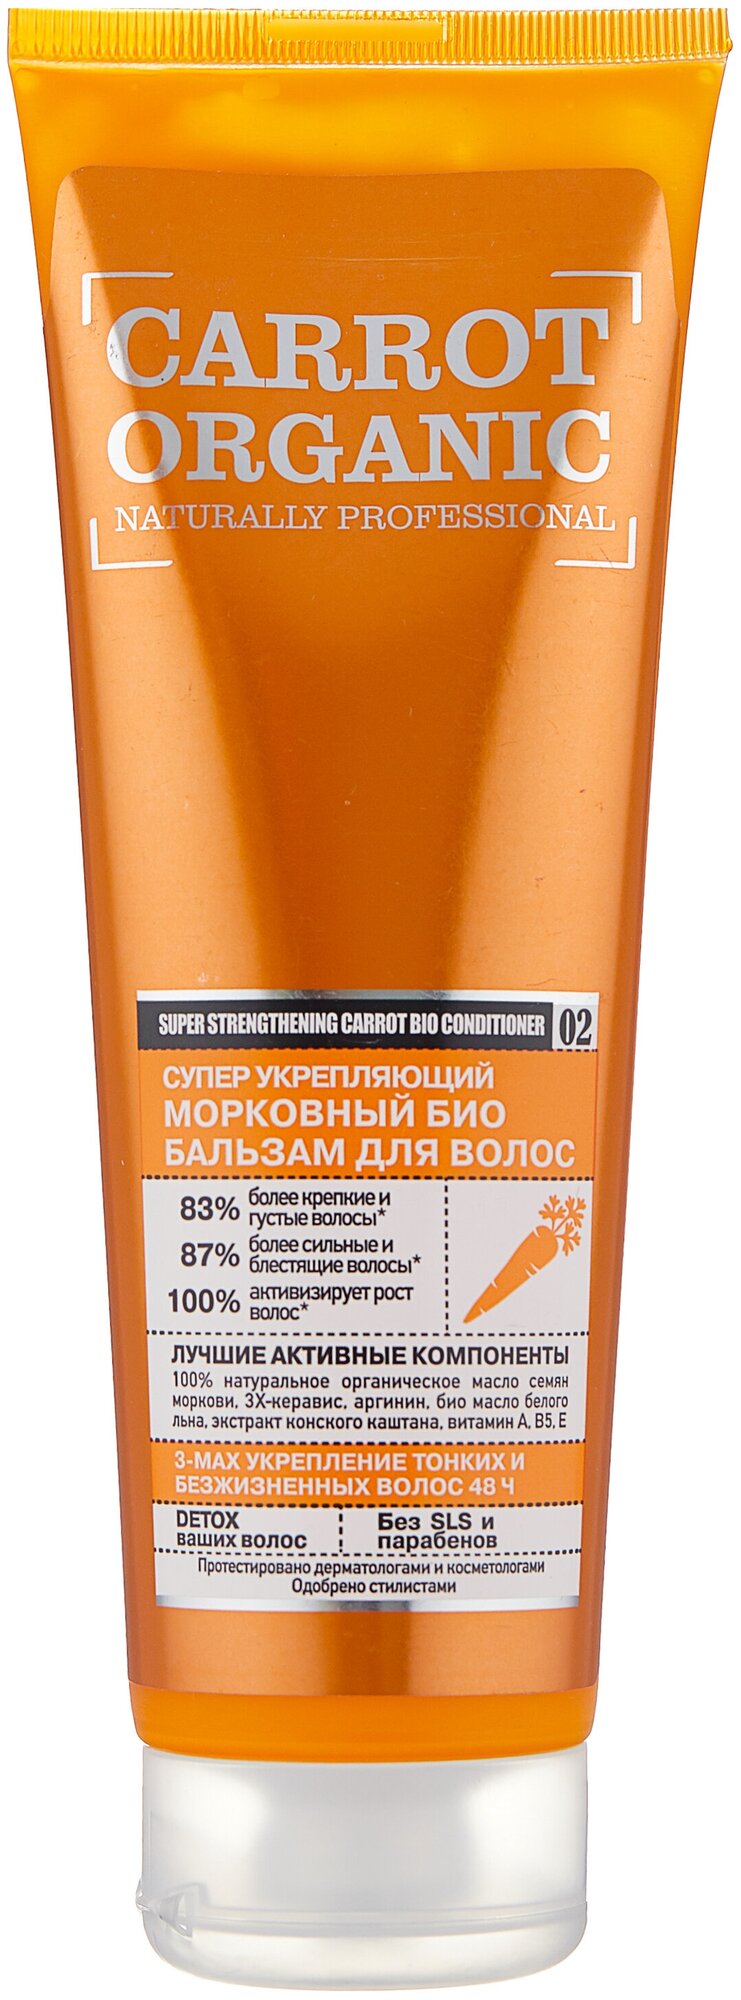 Био бальзам для волос "Супер укрепляющий" Organic naturally professional Carrot, 250 мл